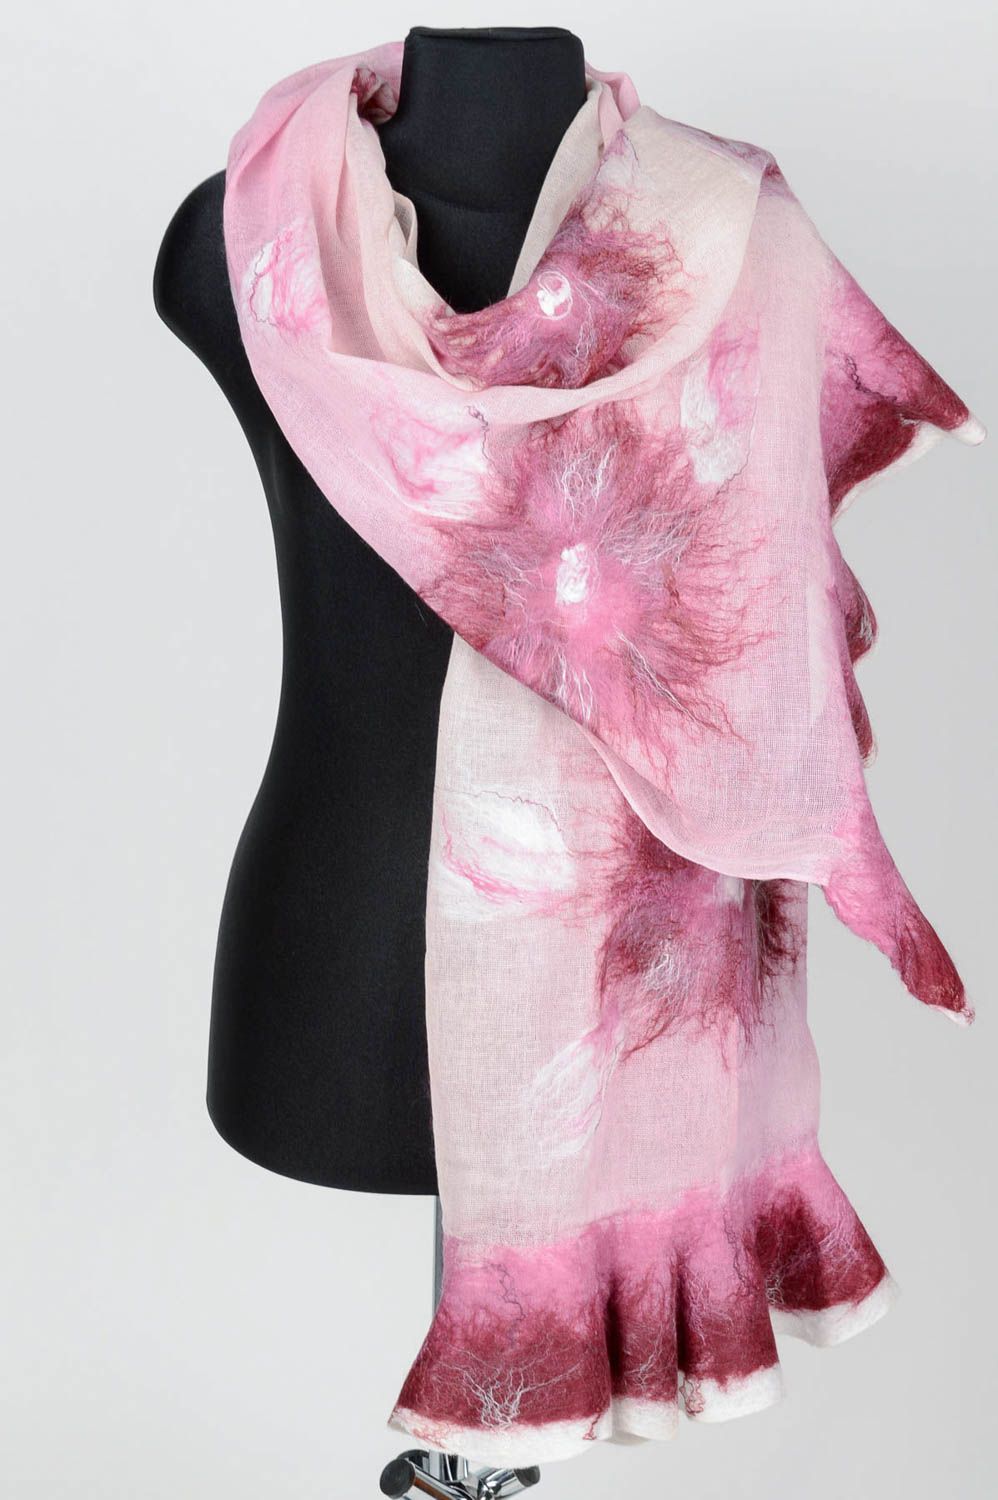 Handmade gefilzter Schal Frauen Accessoire Geschenk für Frau schön rosa foto 1